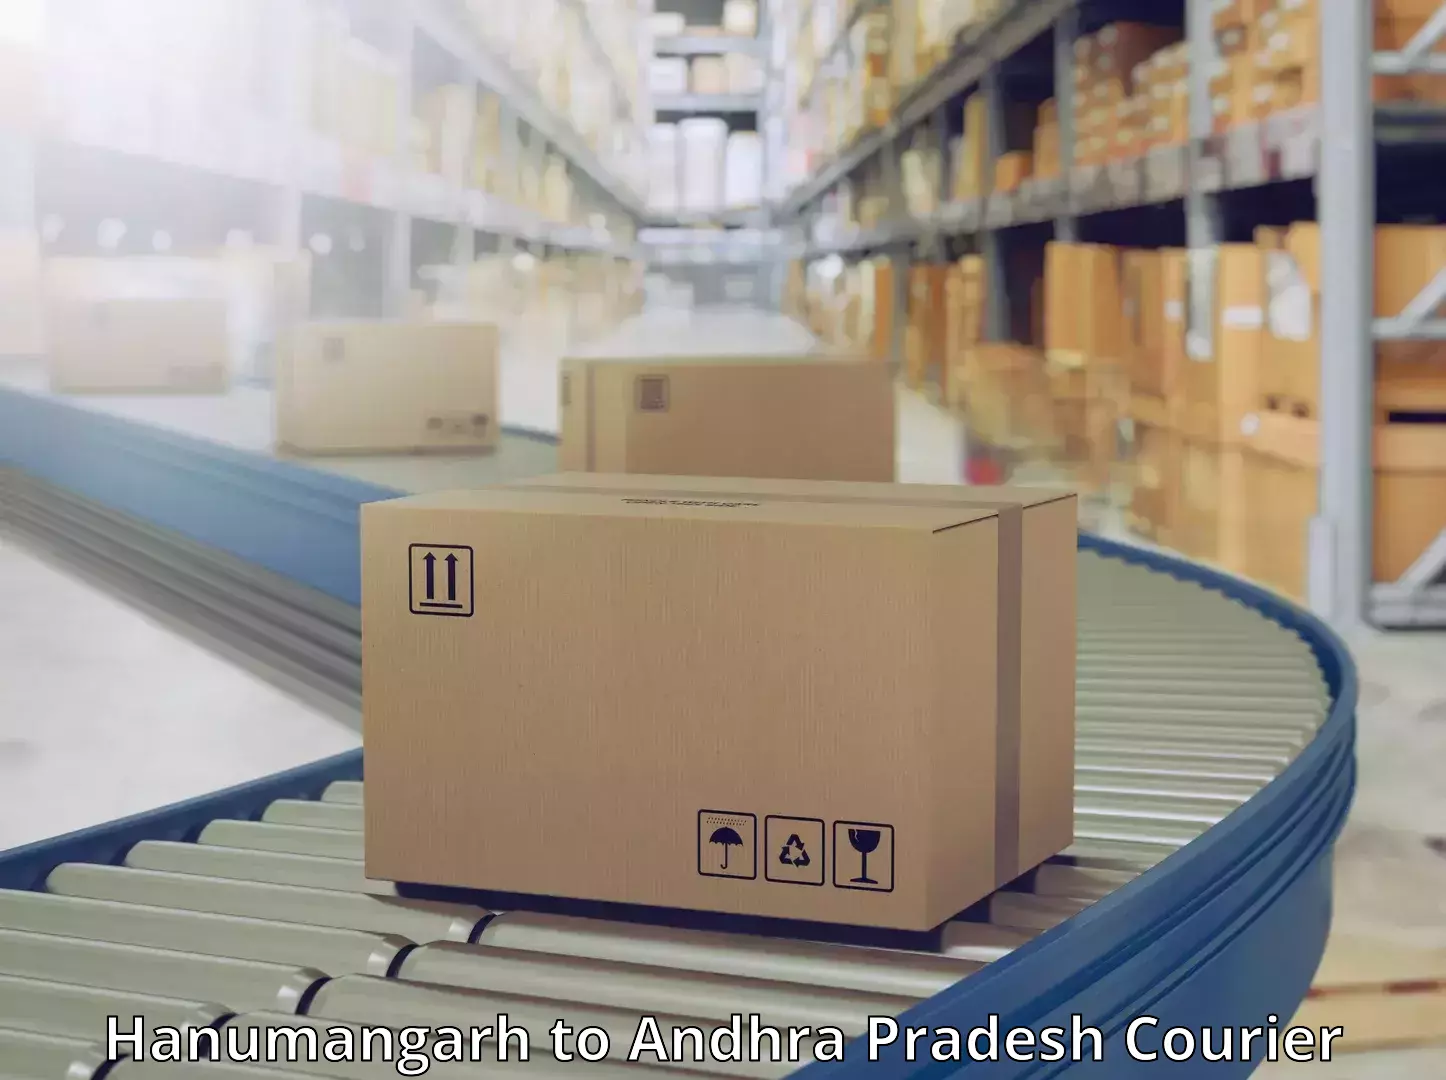 24-hour courier service Hanumangarh to Andhra Pradesh